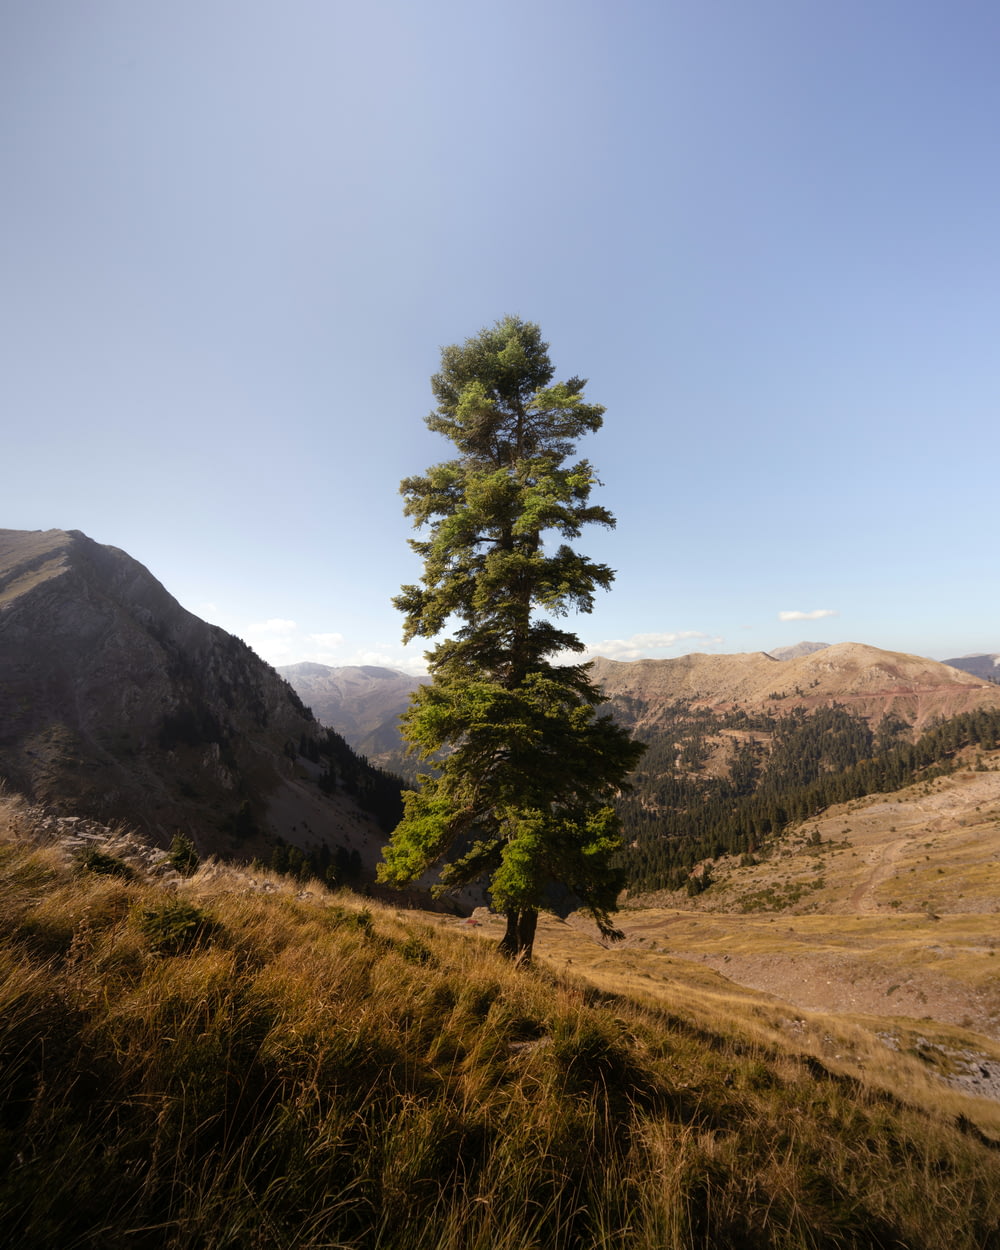 un árbol solitario en una colina cubierta de hierba con montañas en el fondo